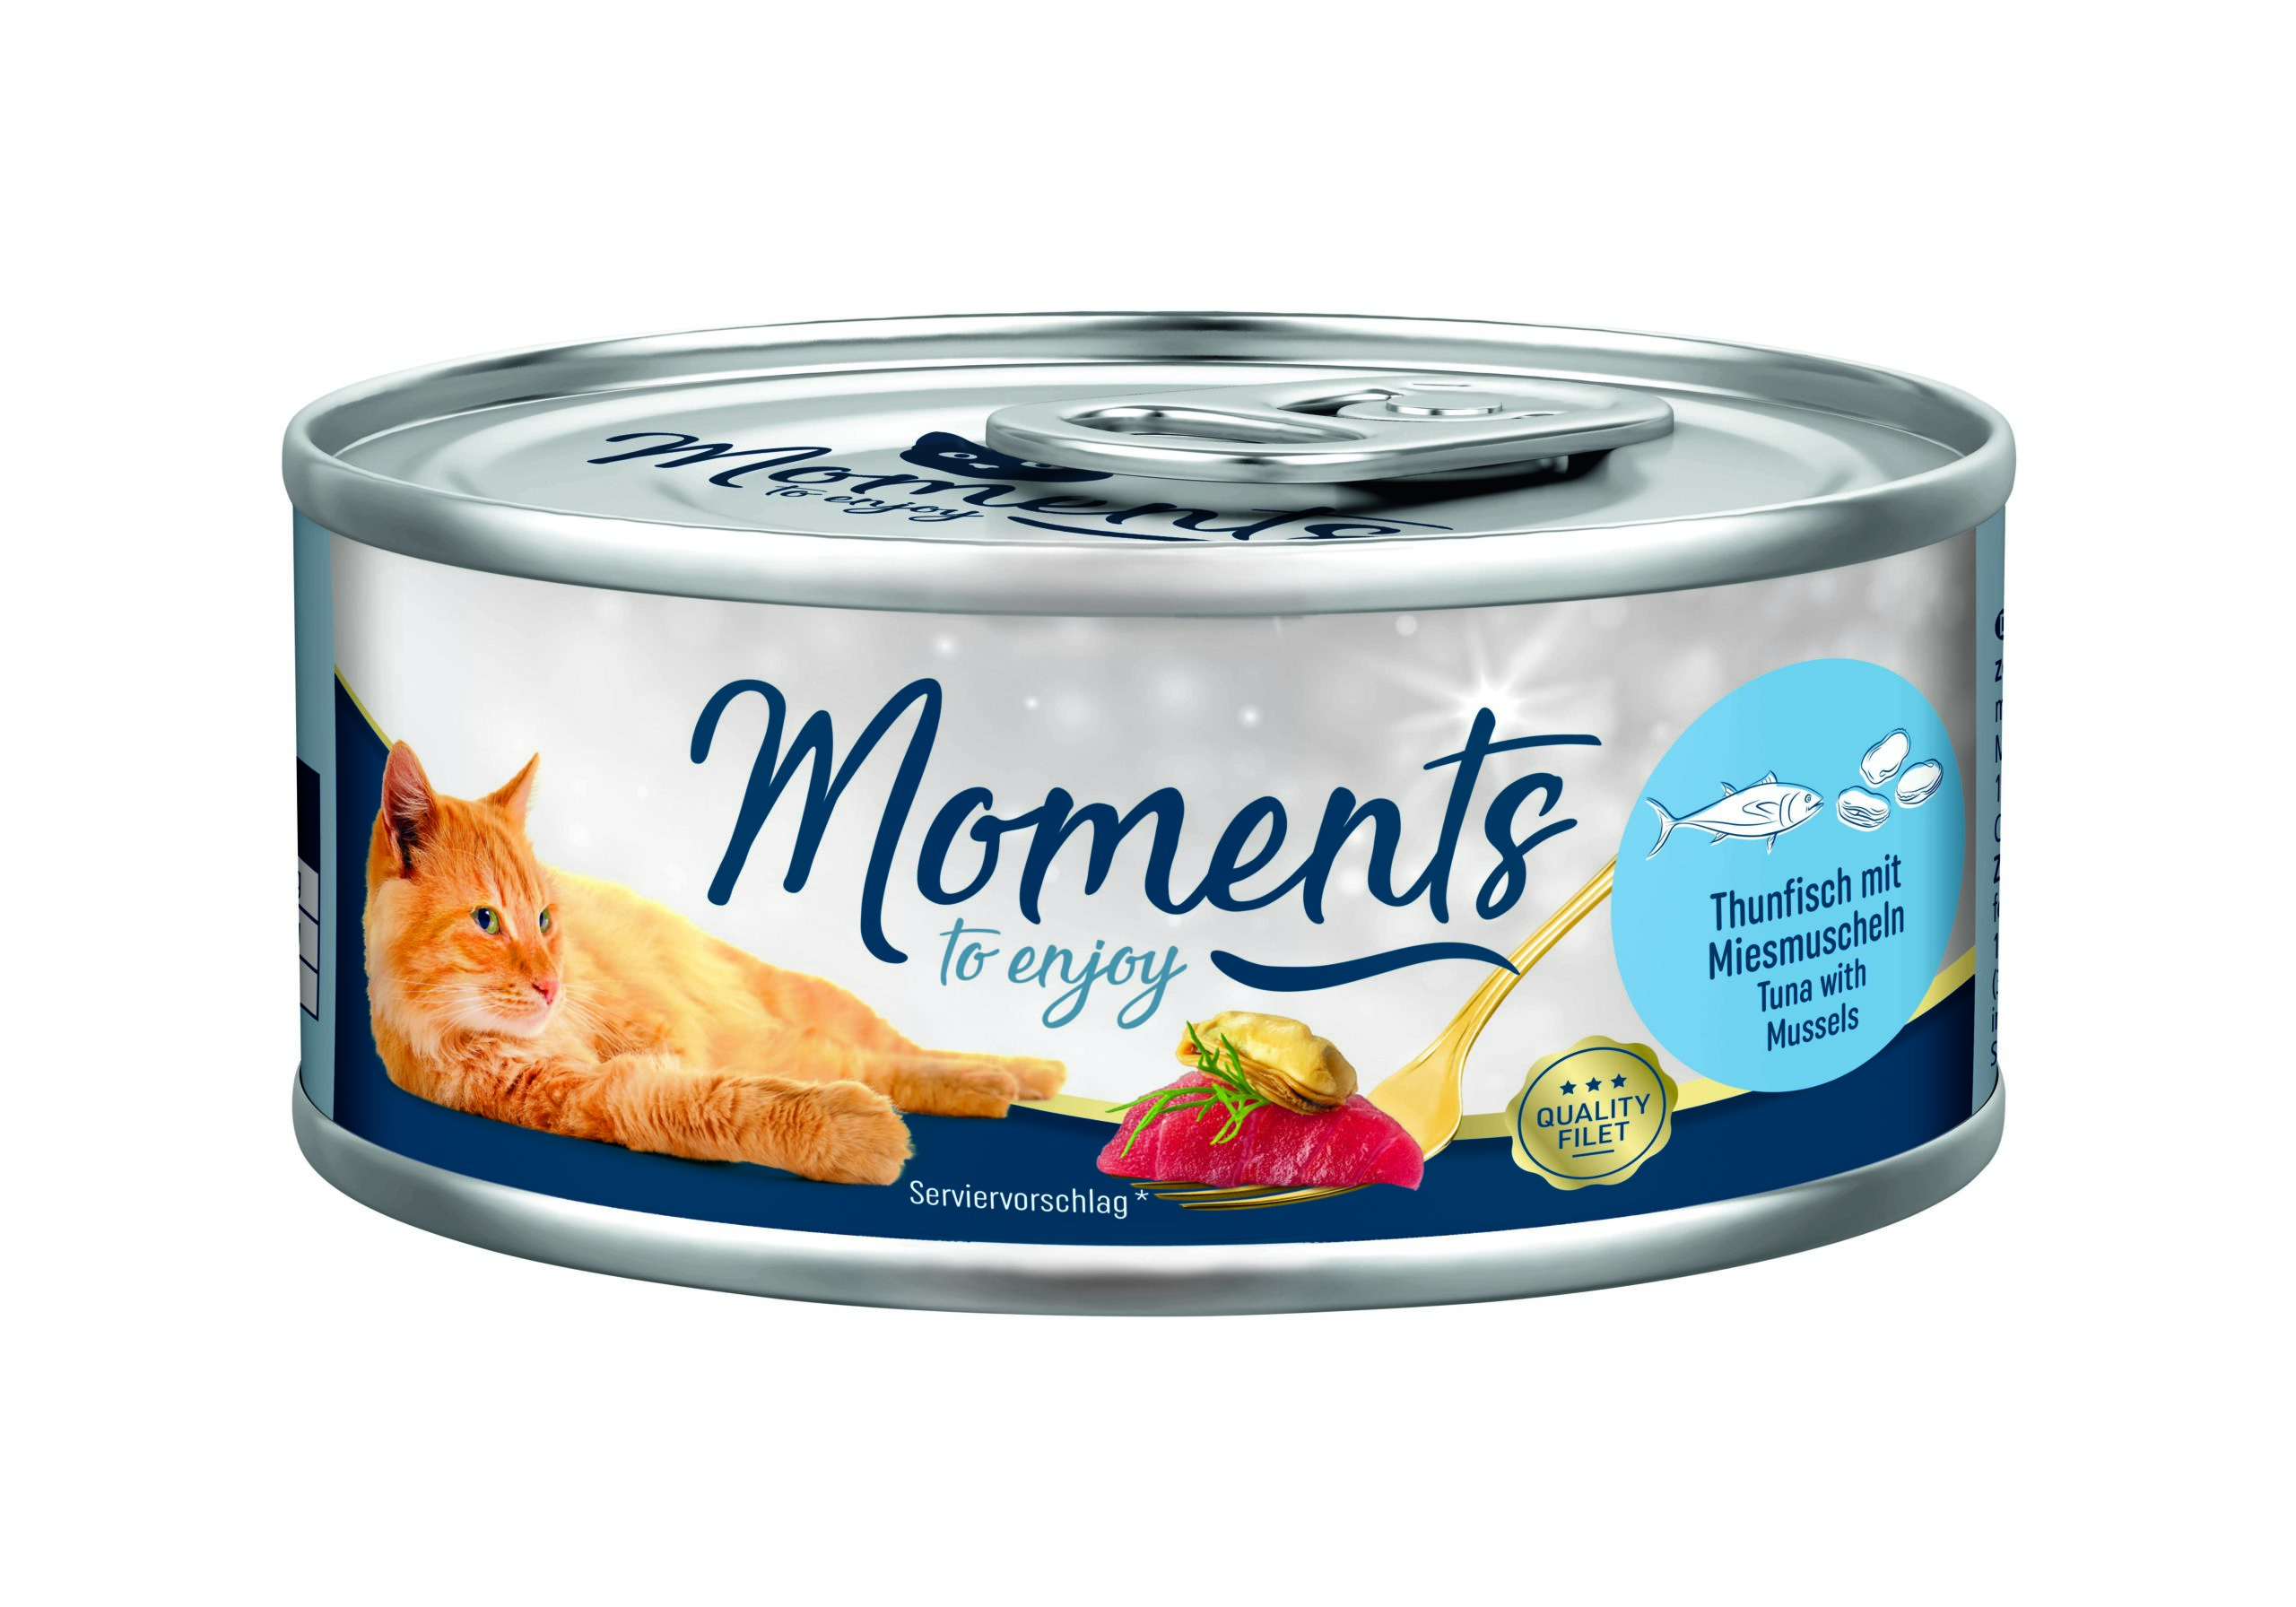 Moments macska konzerv tonhal&kék kagyló 12x70g